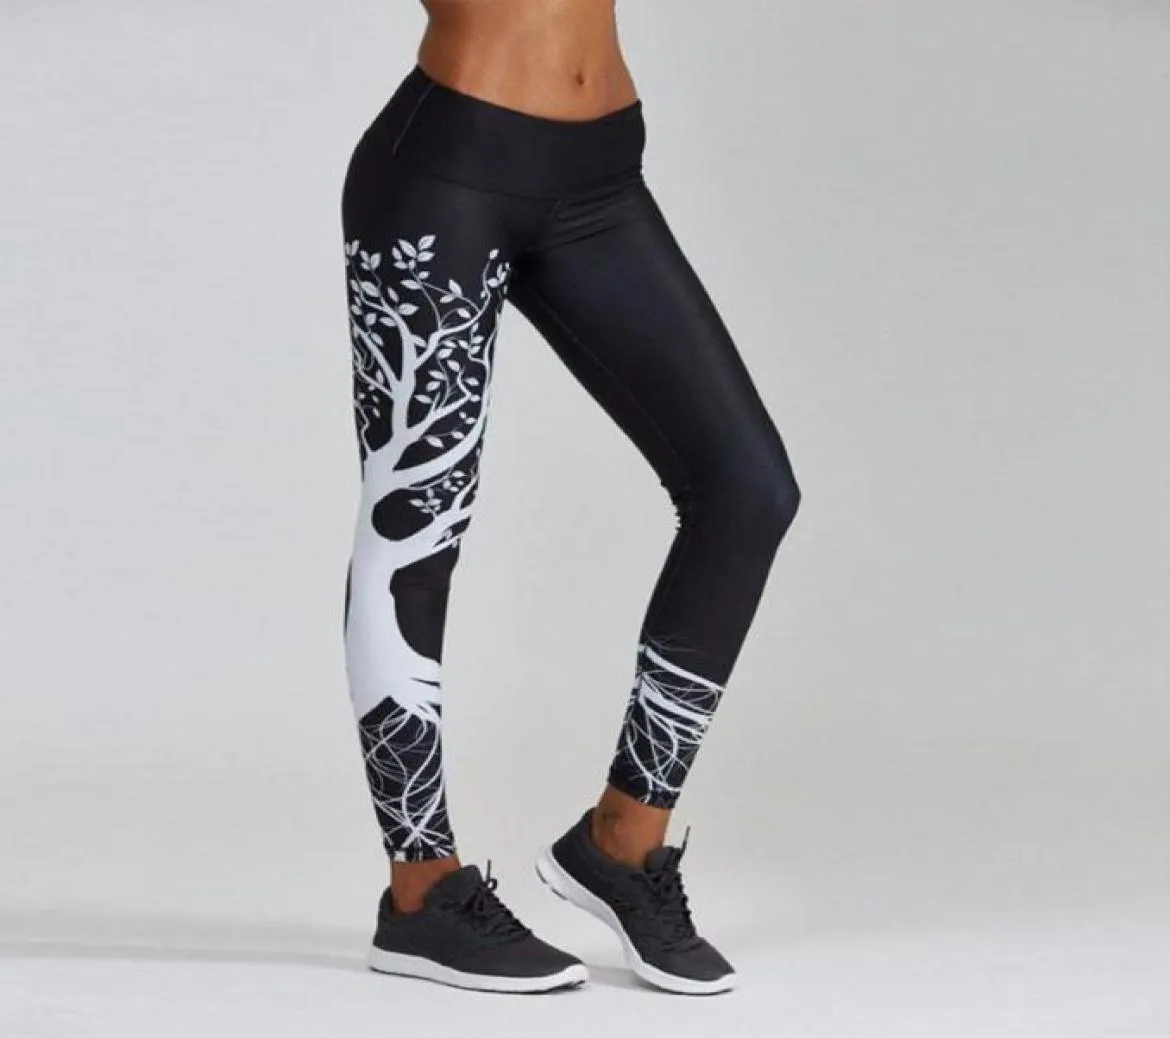 Yoga Outfits Frauen Baum gedruckt Sport Hosen Workout Gym Mädchen Übung athletische Push-Up-Leggings schwarz grau weiß1330840